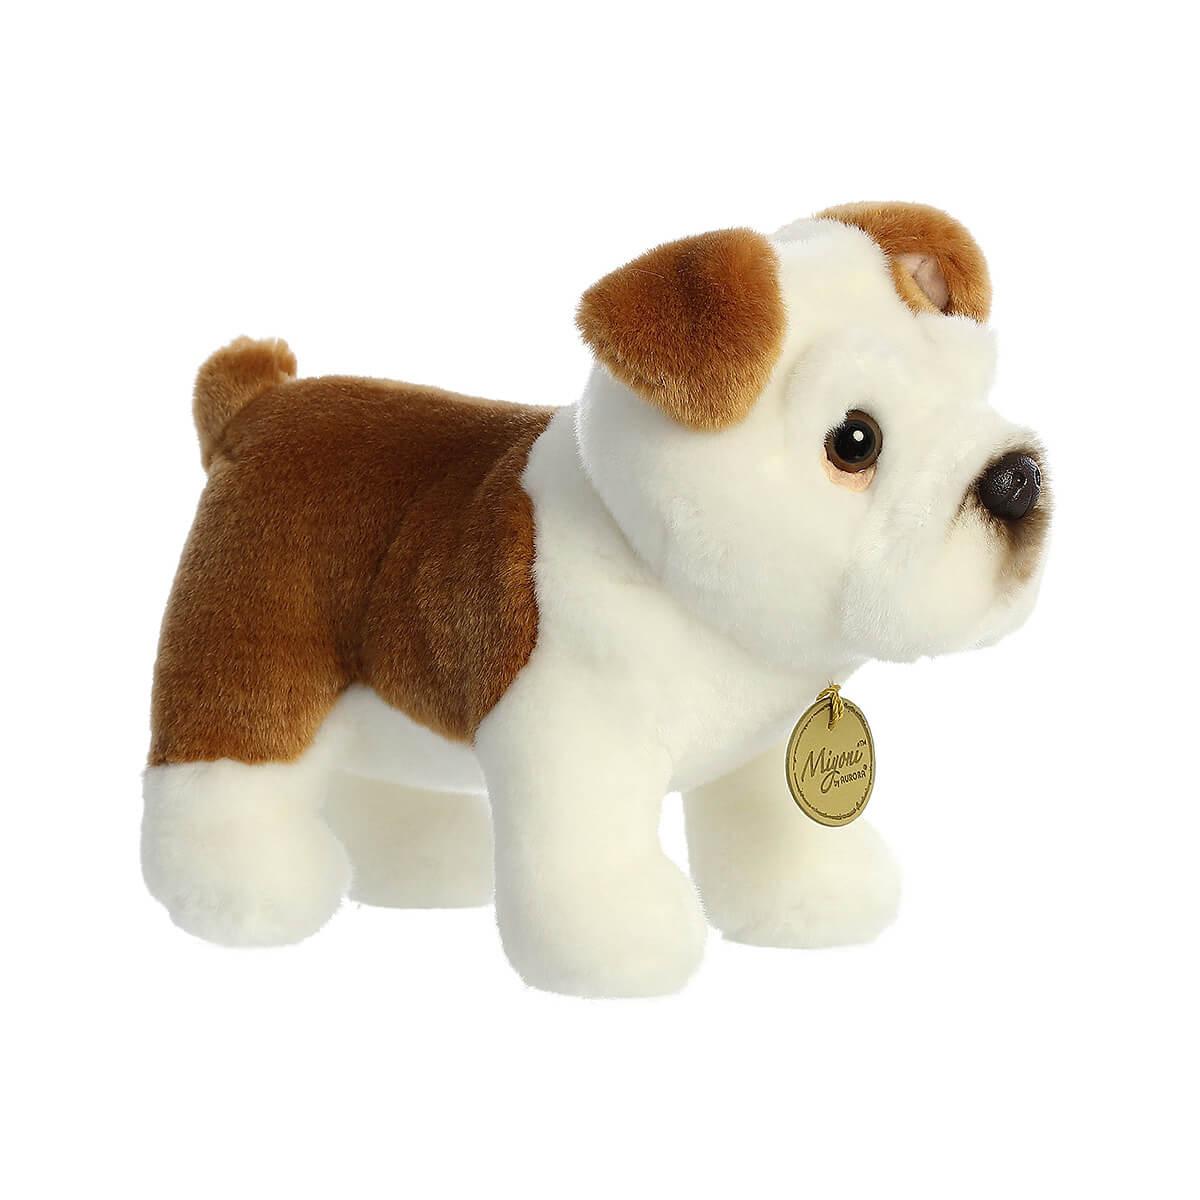  Bulldog Plush Toy